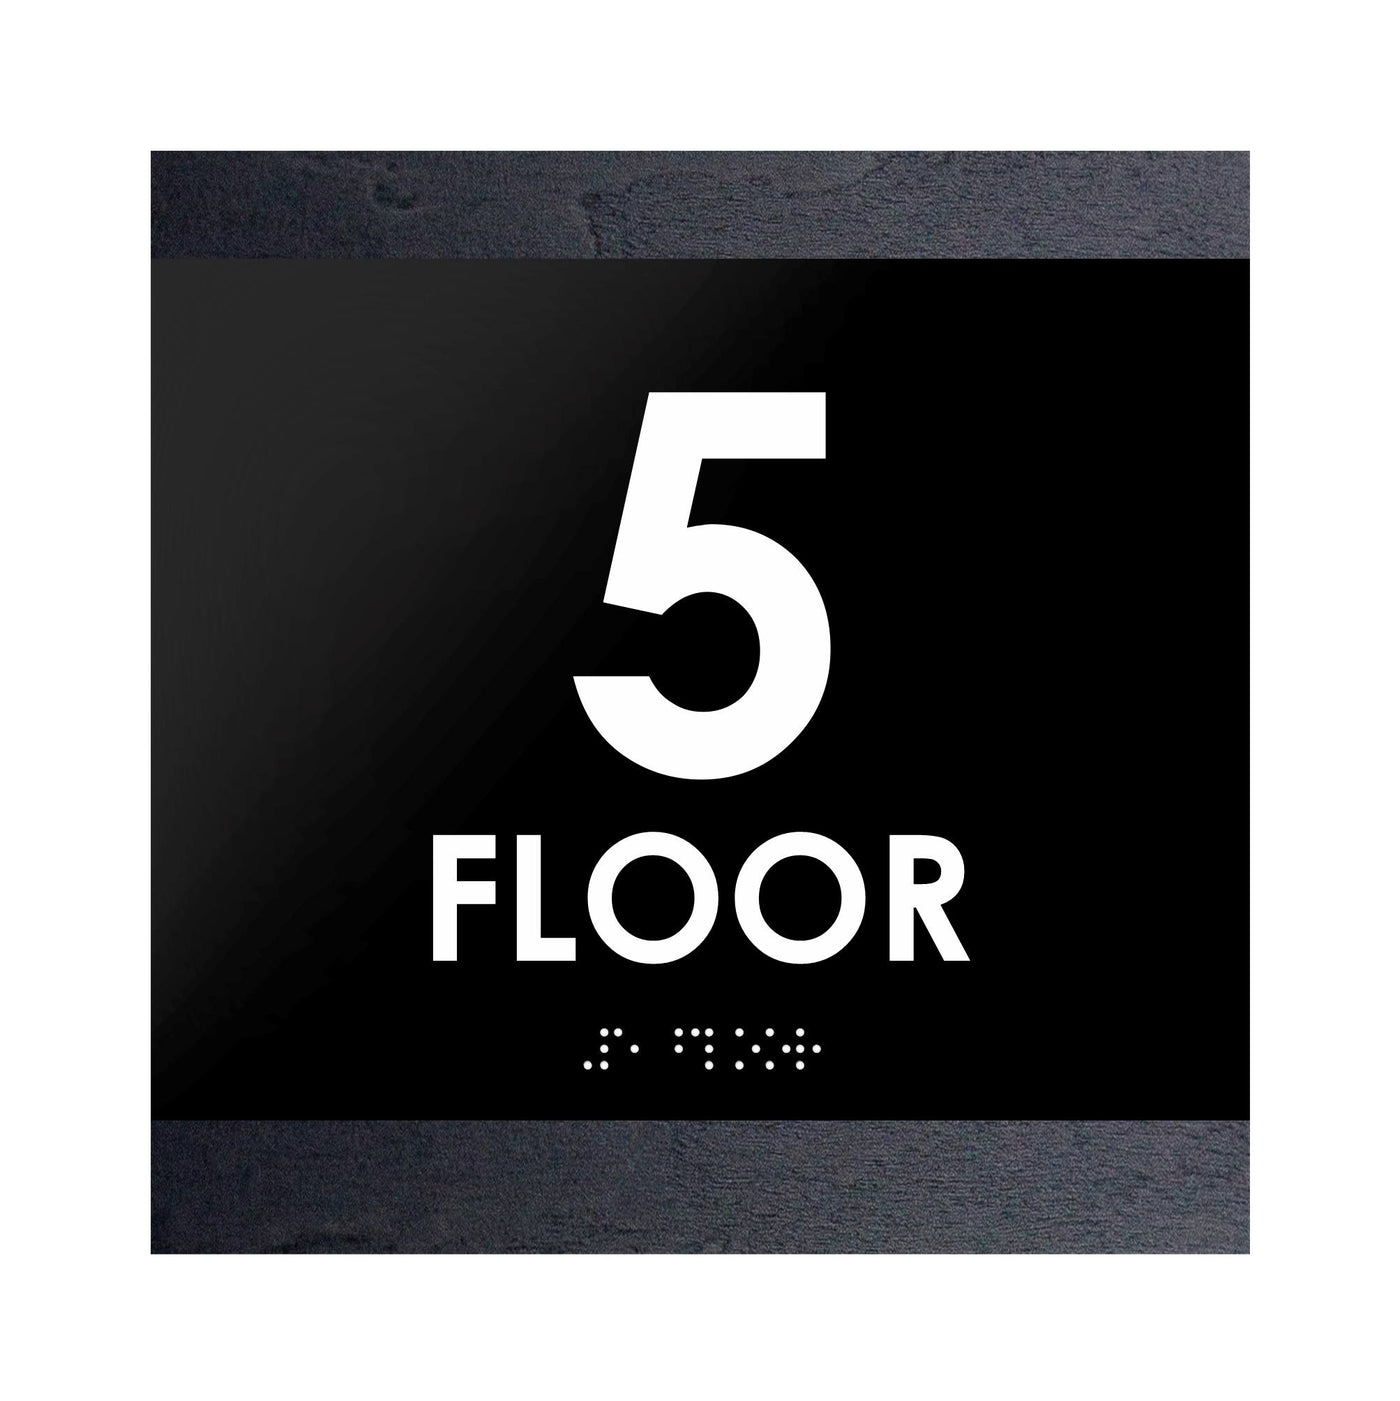 Floor Signs - 5s Floor Sign "Buro" Design